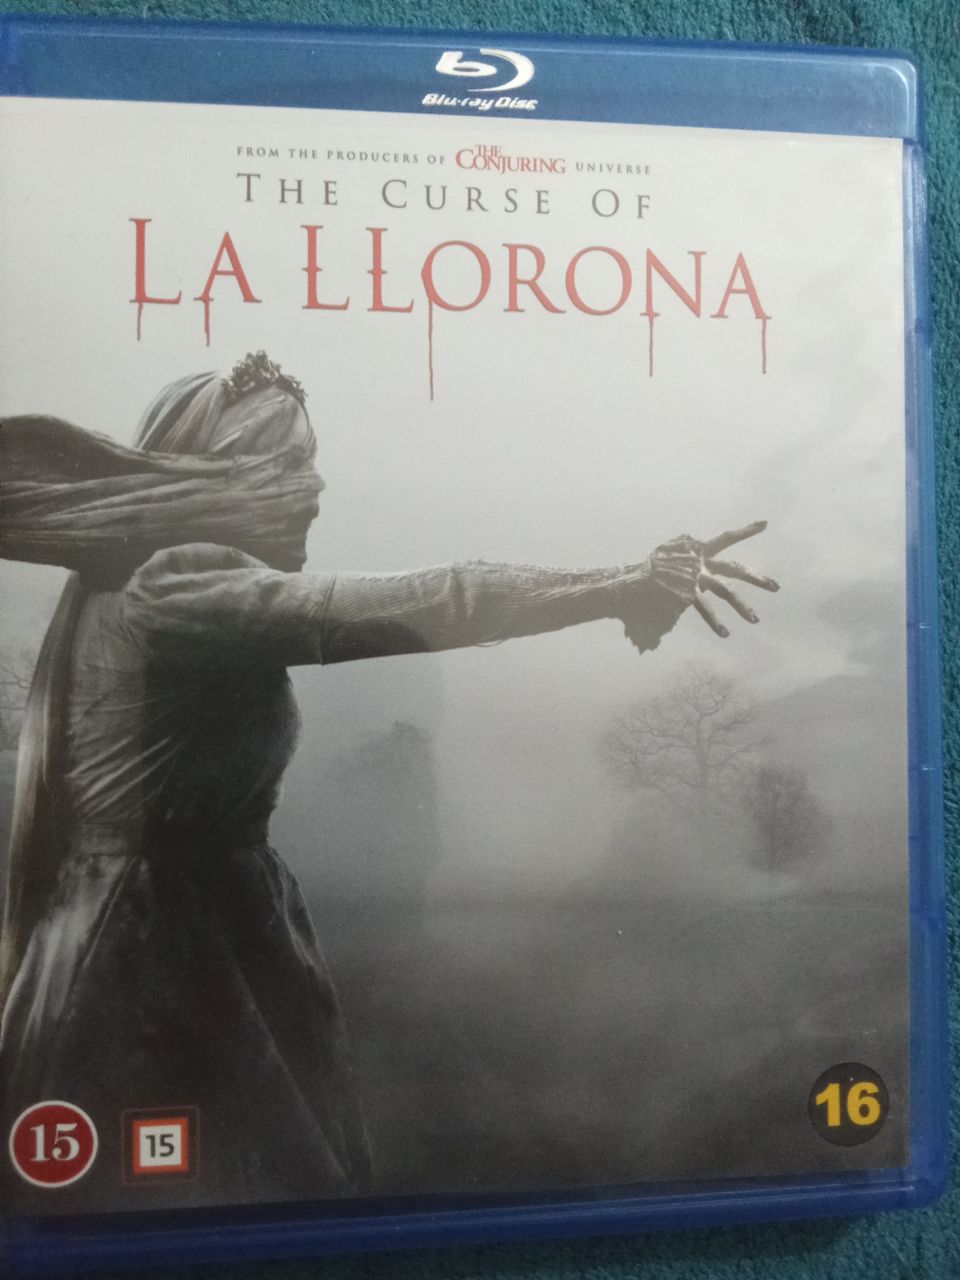 The curse of la llorona